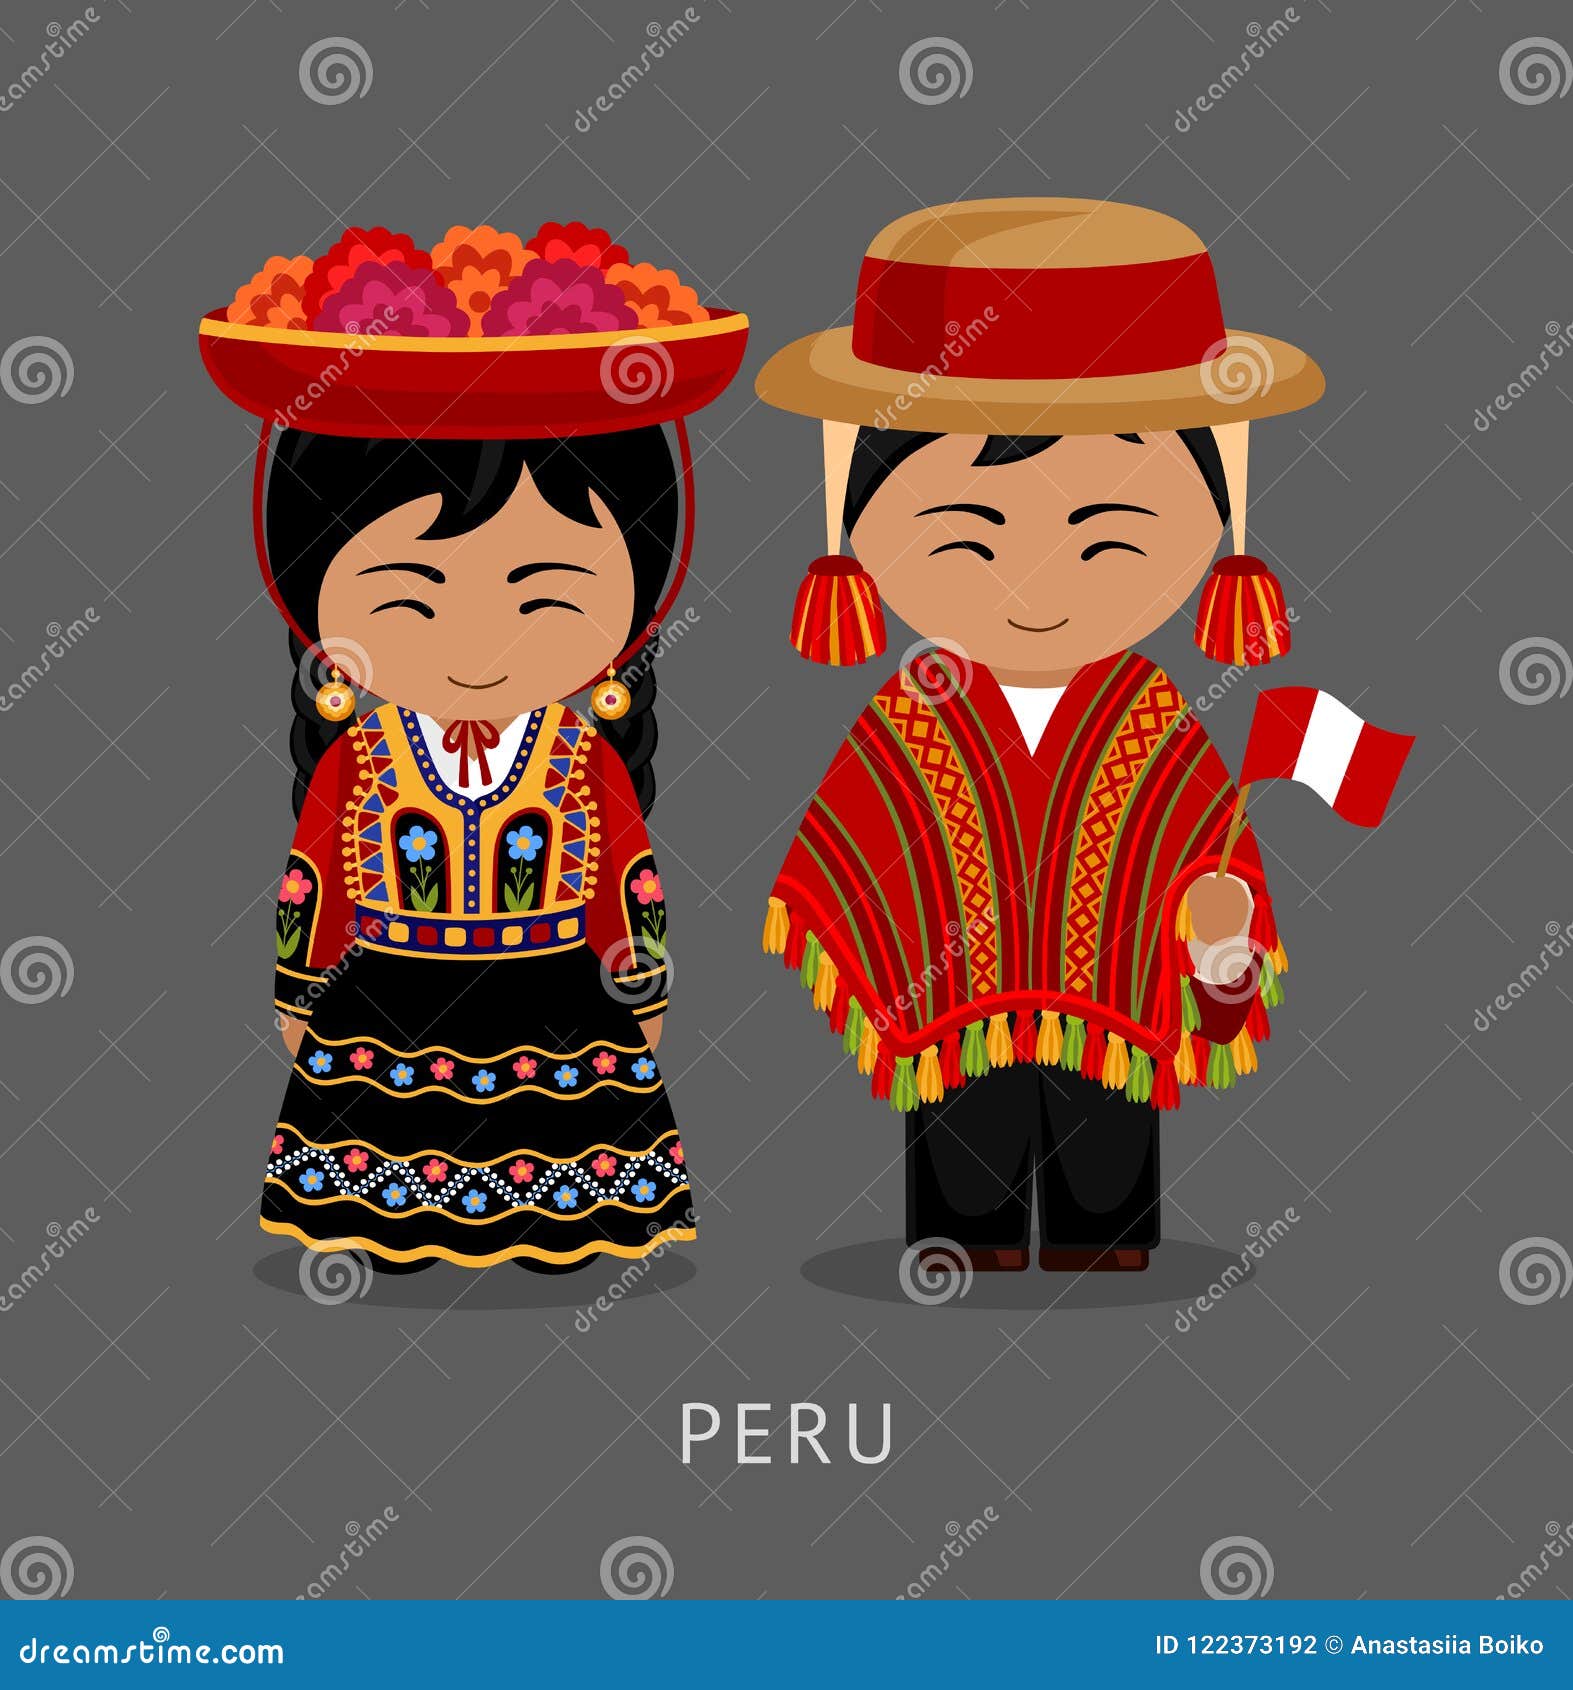 peruvian in national dress.